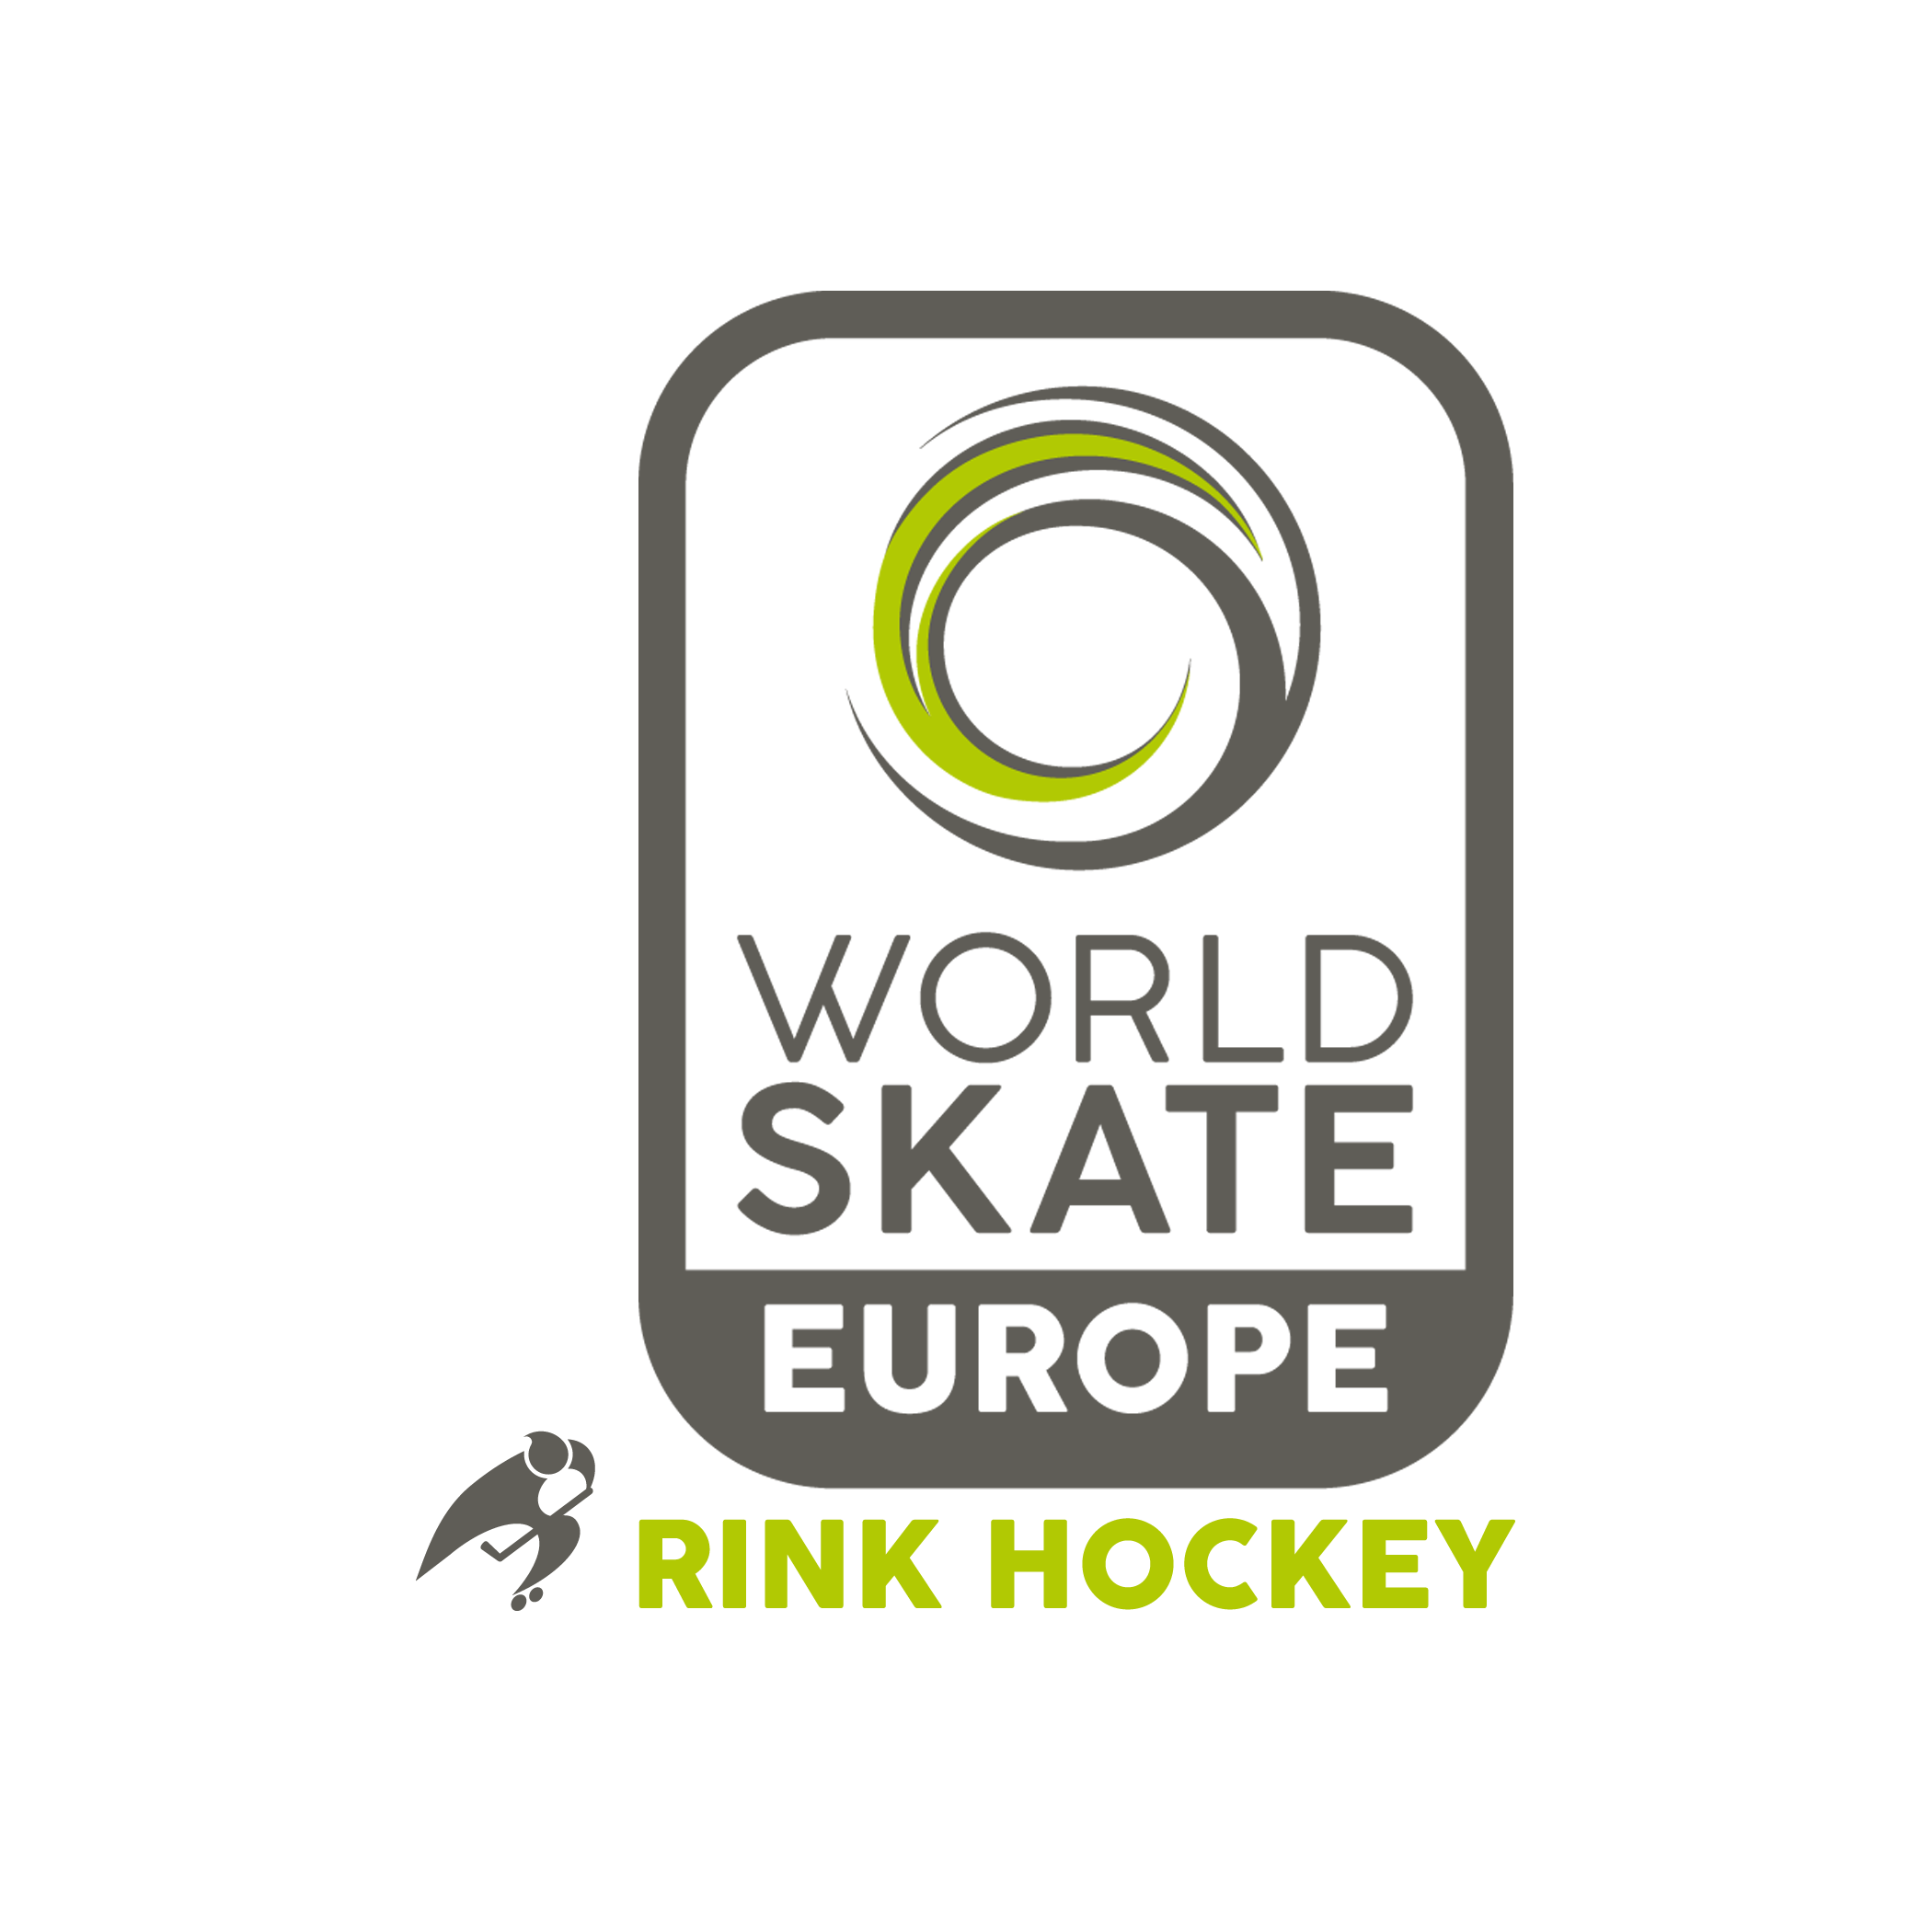 Comité Européen de Rink-Hockey CERH